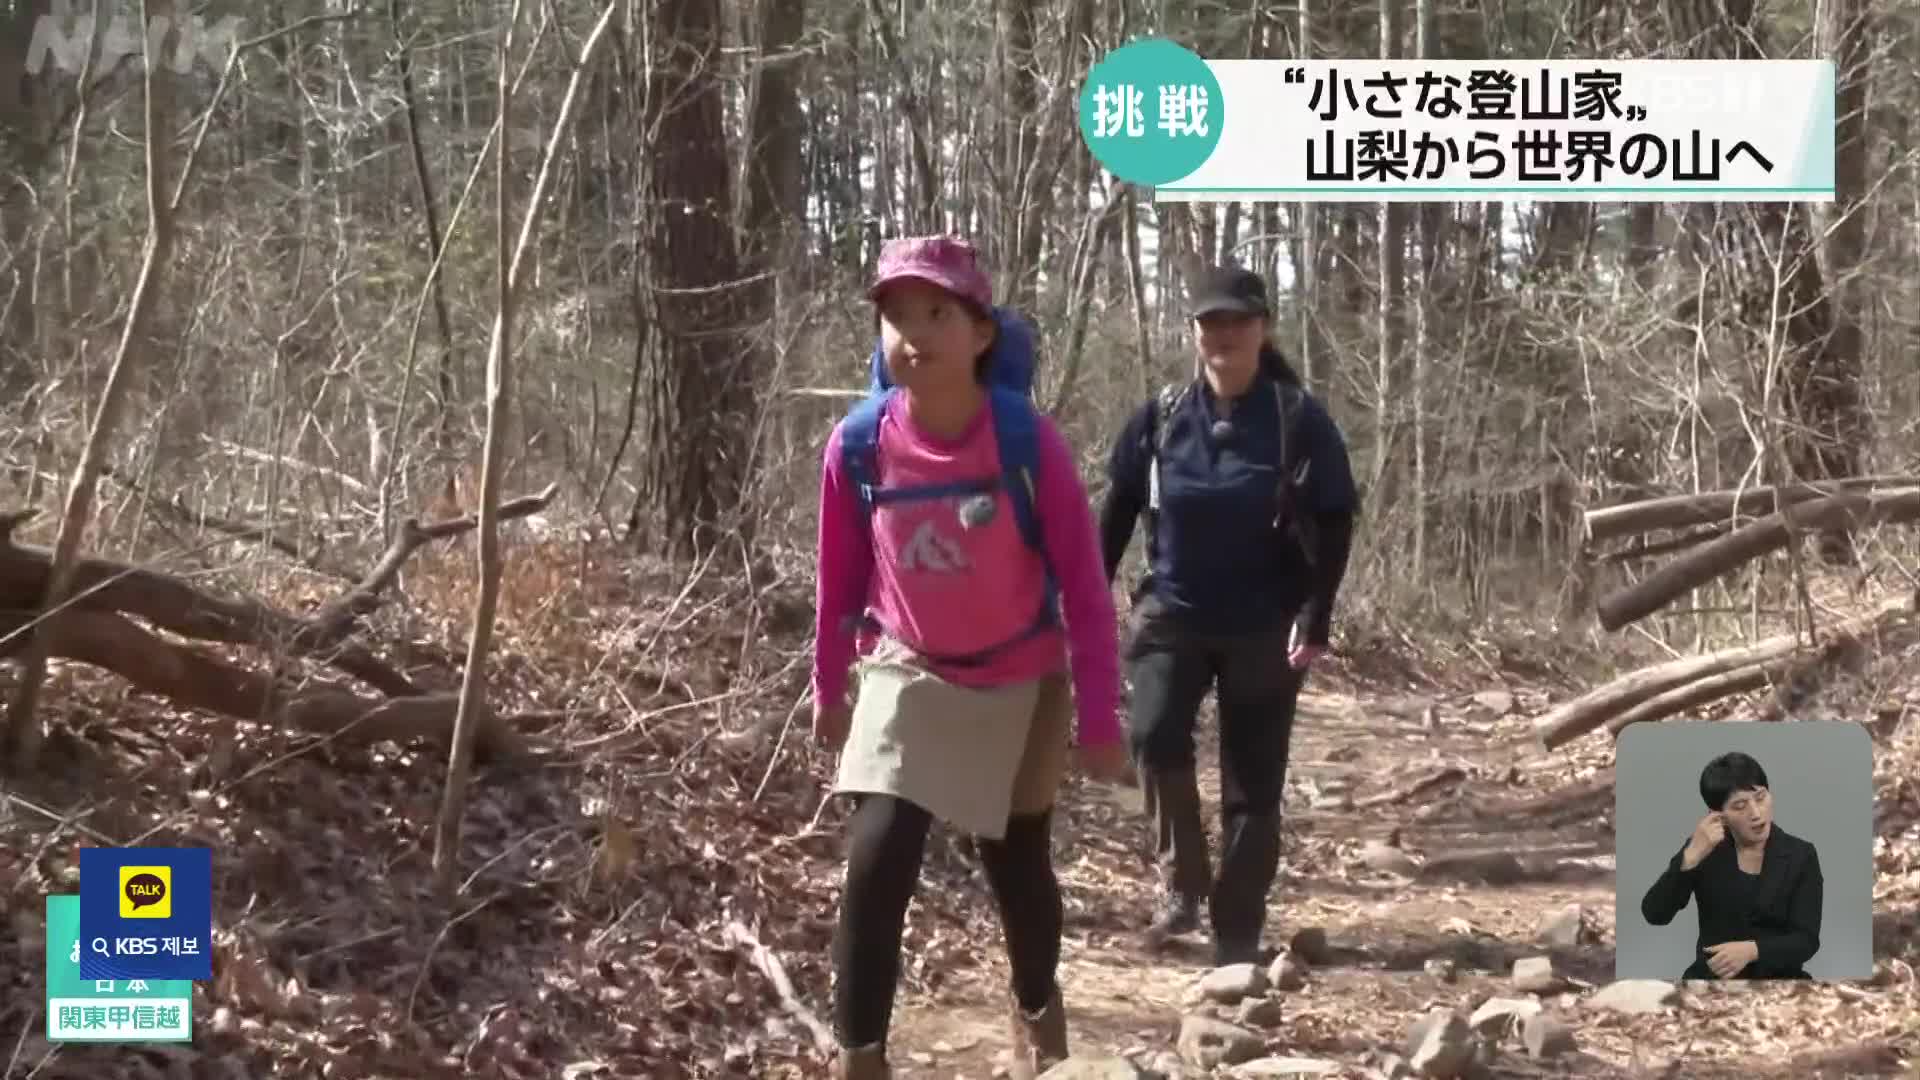 일본, 킬리만자로 등반에 도전하는 초등학생 등산가